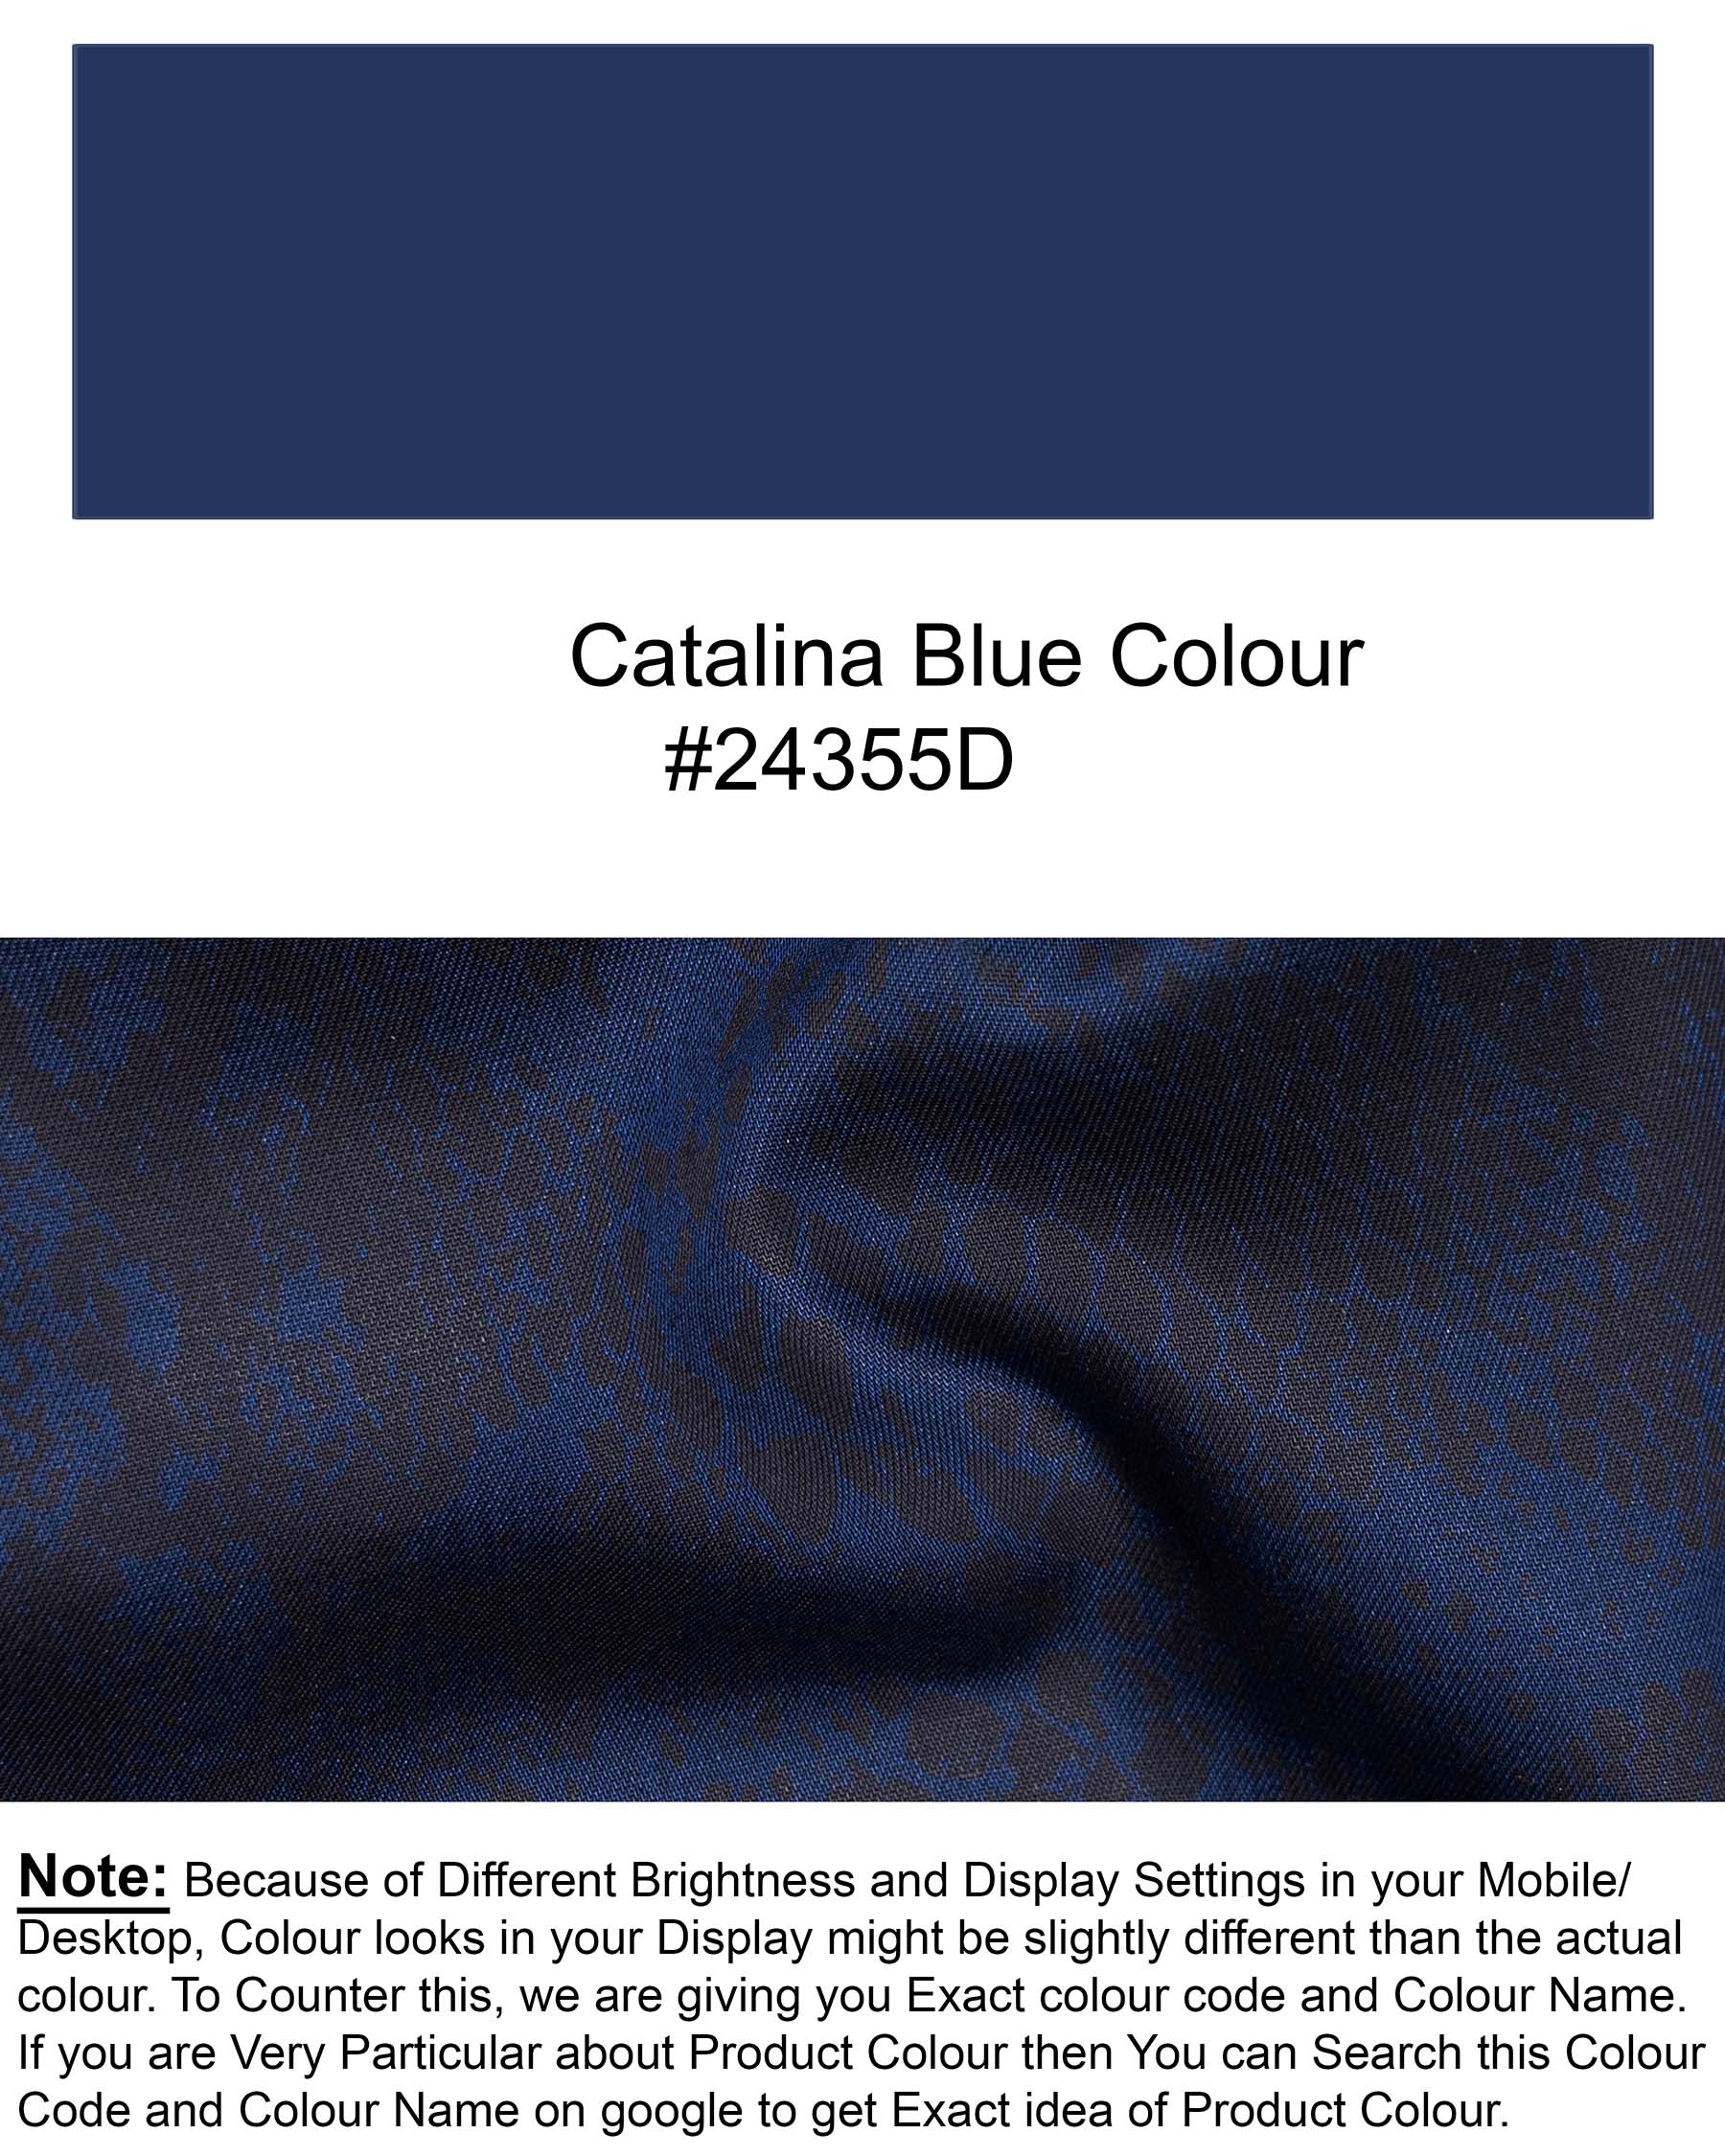 Catalina Blue anaconda Print Chambray Premium Cotton Shirt 6079-BD-BLK-38, 6079-BD-BLK-H-38, 6079-BD-BLK-39, 6079-BD-BLK-H-39, 6079-BD-BLK-40, 6079-BD-BLK-H-40, 6079-BD-BLK-42, 6079-BD-BLK-H-42, 6079-BD-BLK-44, 6079-BD-BLK-H-44, 6079-BD-BLK-46, 6079-BD-BLK-H-46, 6079-BD-BLK-48, 6079-BD-BLK-H-48, 6079-BD-BLK-50, 6079-BD-BLK-H-50, 6079-BD-BLK-52, 6079-BD-BLK-H-52